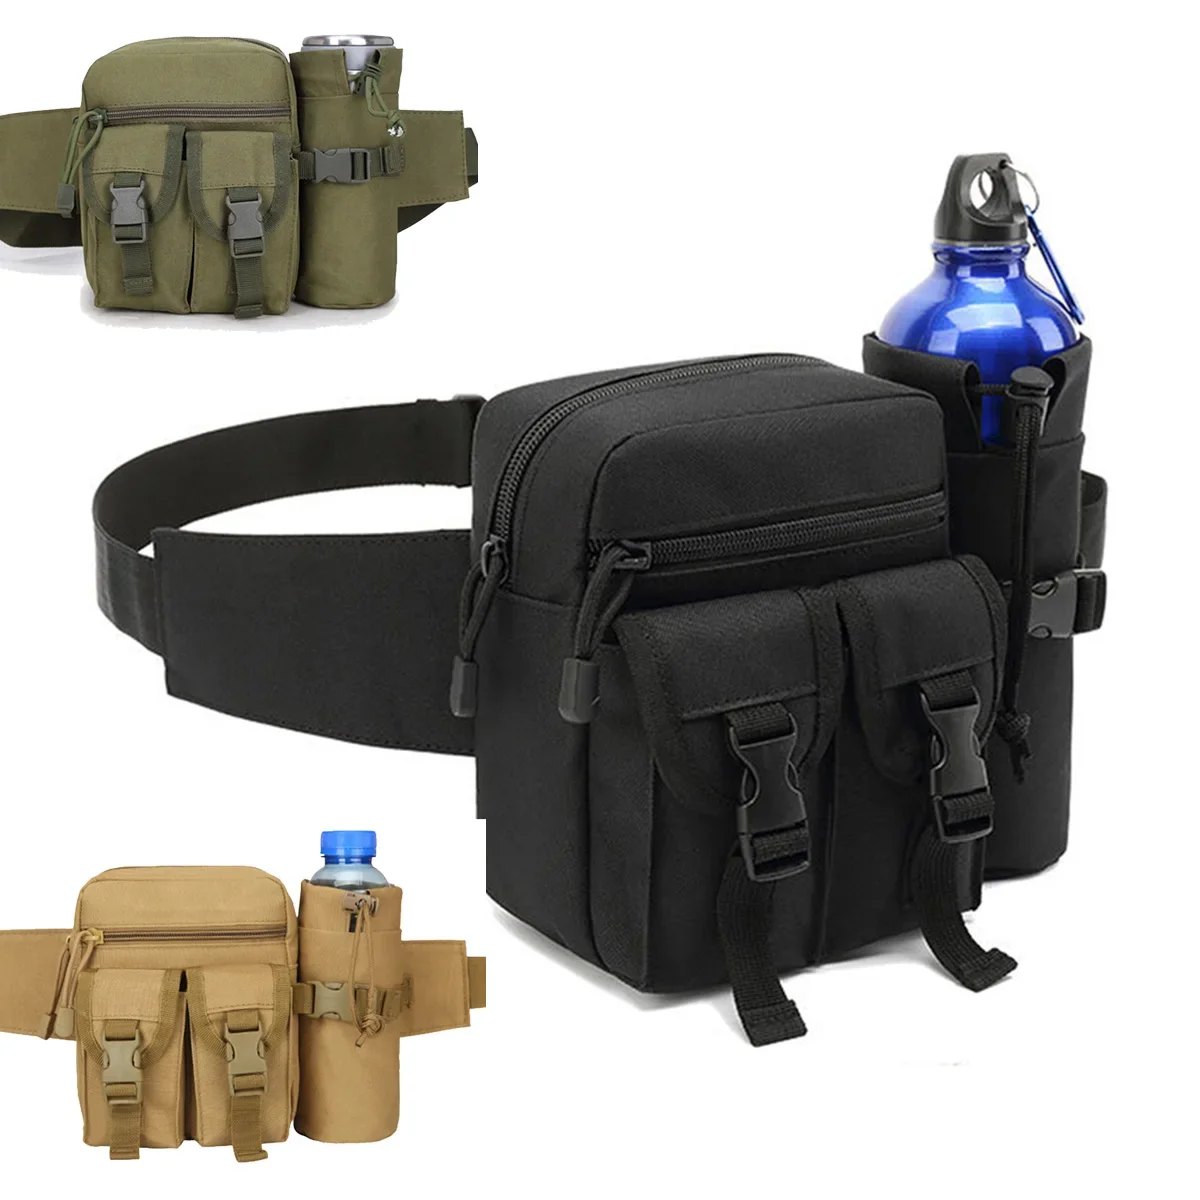 

Поясная сумка для мужчин, Военная Тактическая сумочка на бедро, в стиле милитари, для кемпинга, рыбалки, путешествий, водной бутылки, восхождения, занятий спортом на открытом воздухе